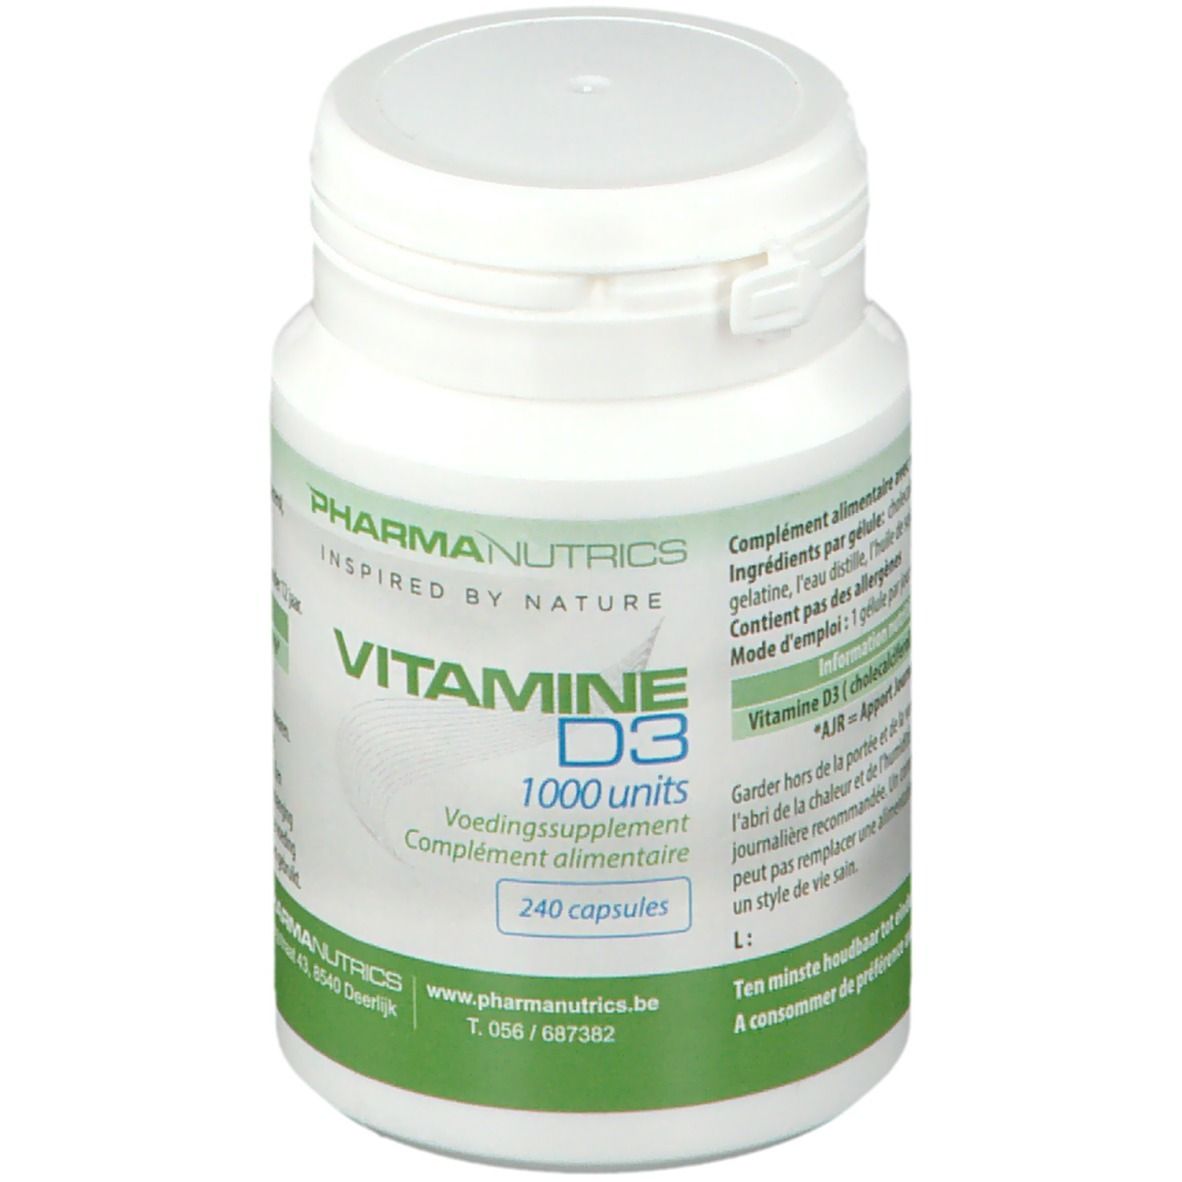 PharmaNutrics Vitamine D3